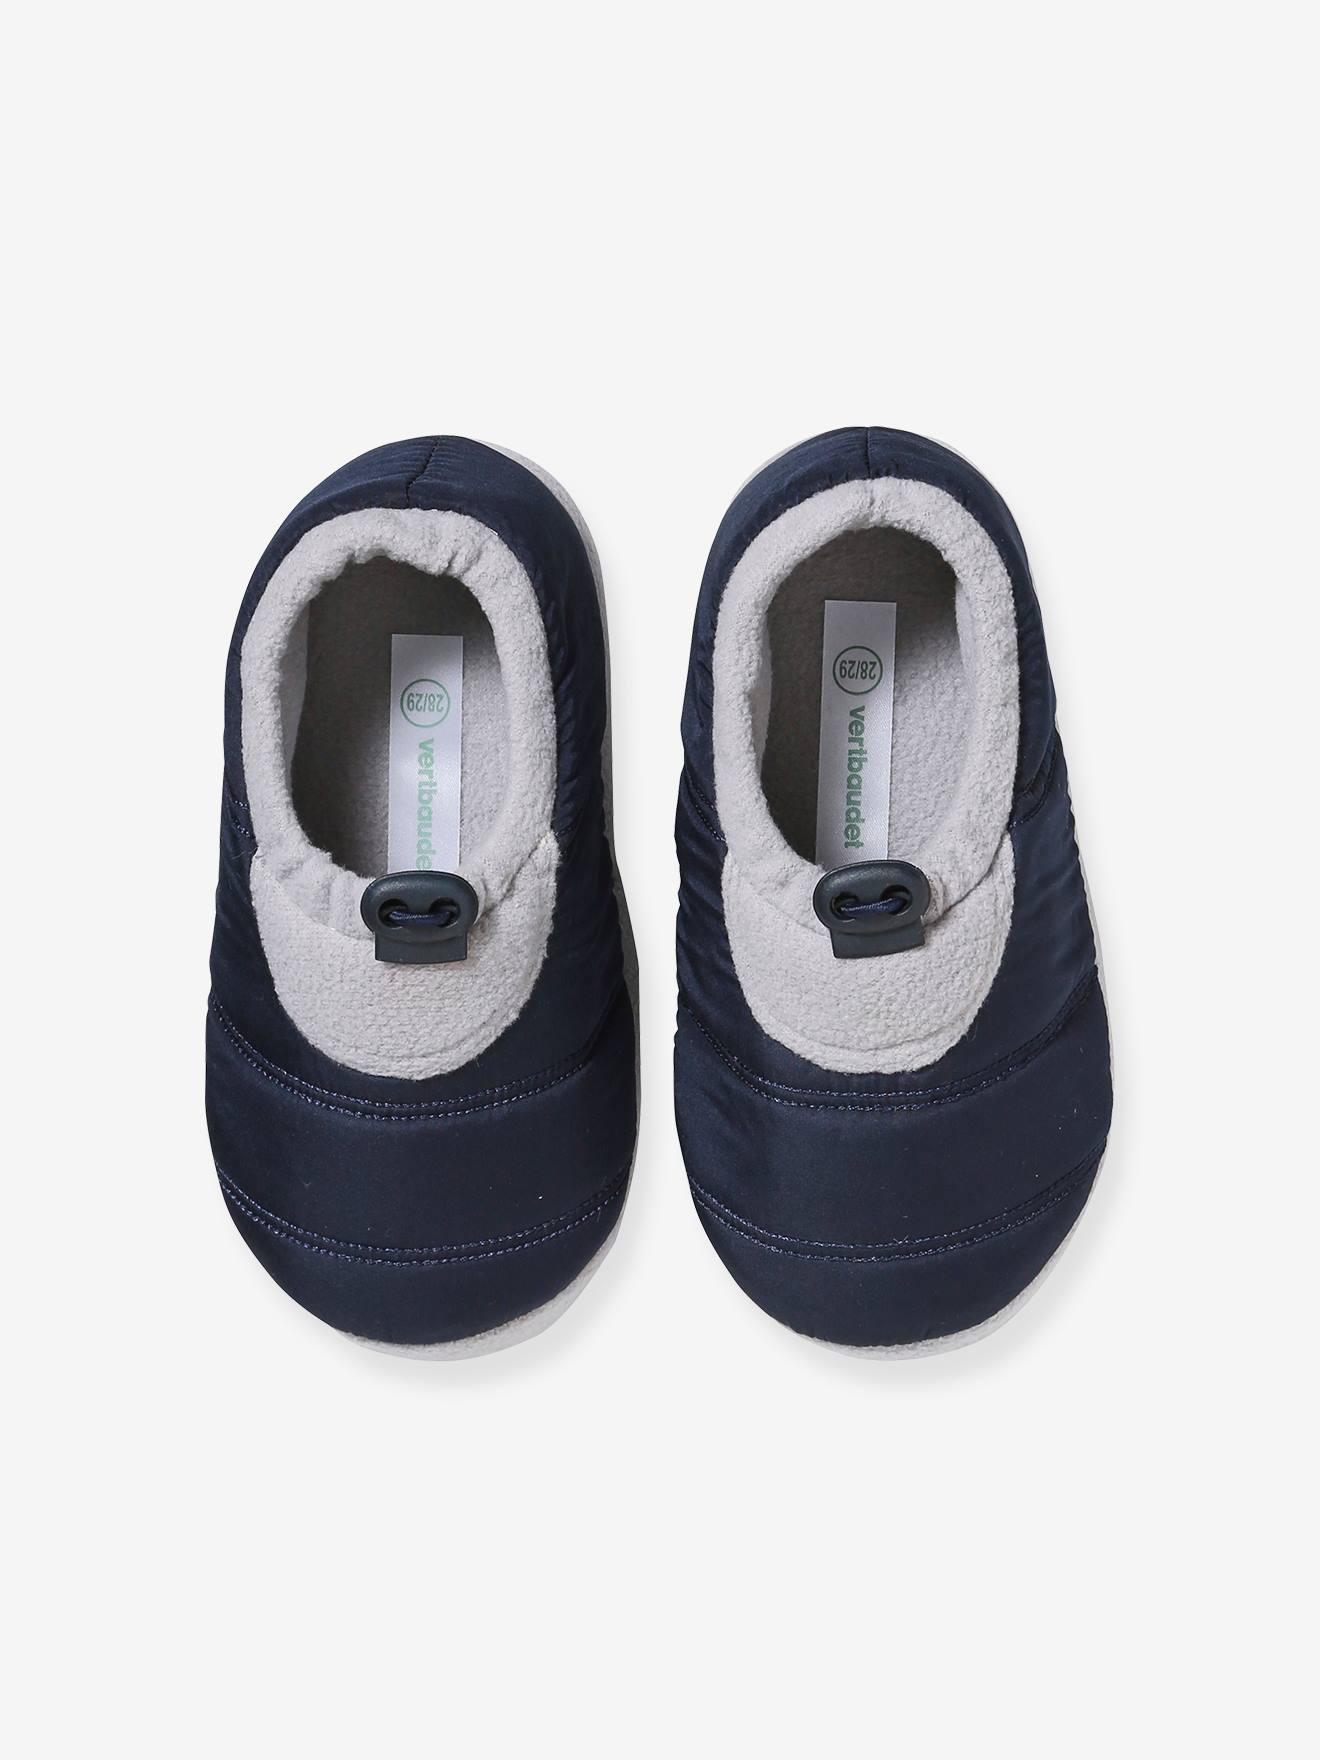 Chaussons Enfant - Lion - Maison Antidérapants - Bleu - Taille M:15.5cm -  Coton/TPR bleu - Cdiscount Chaussures